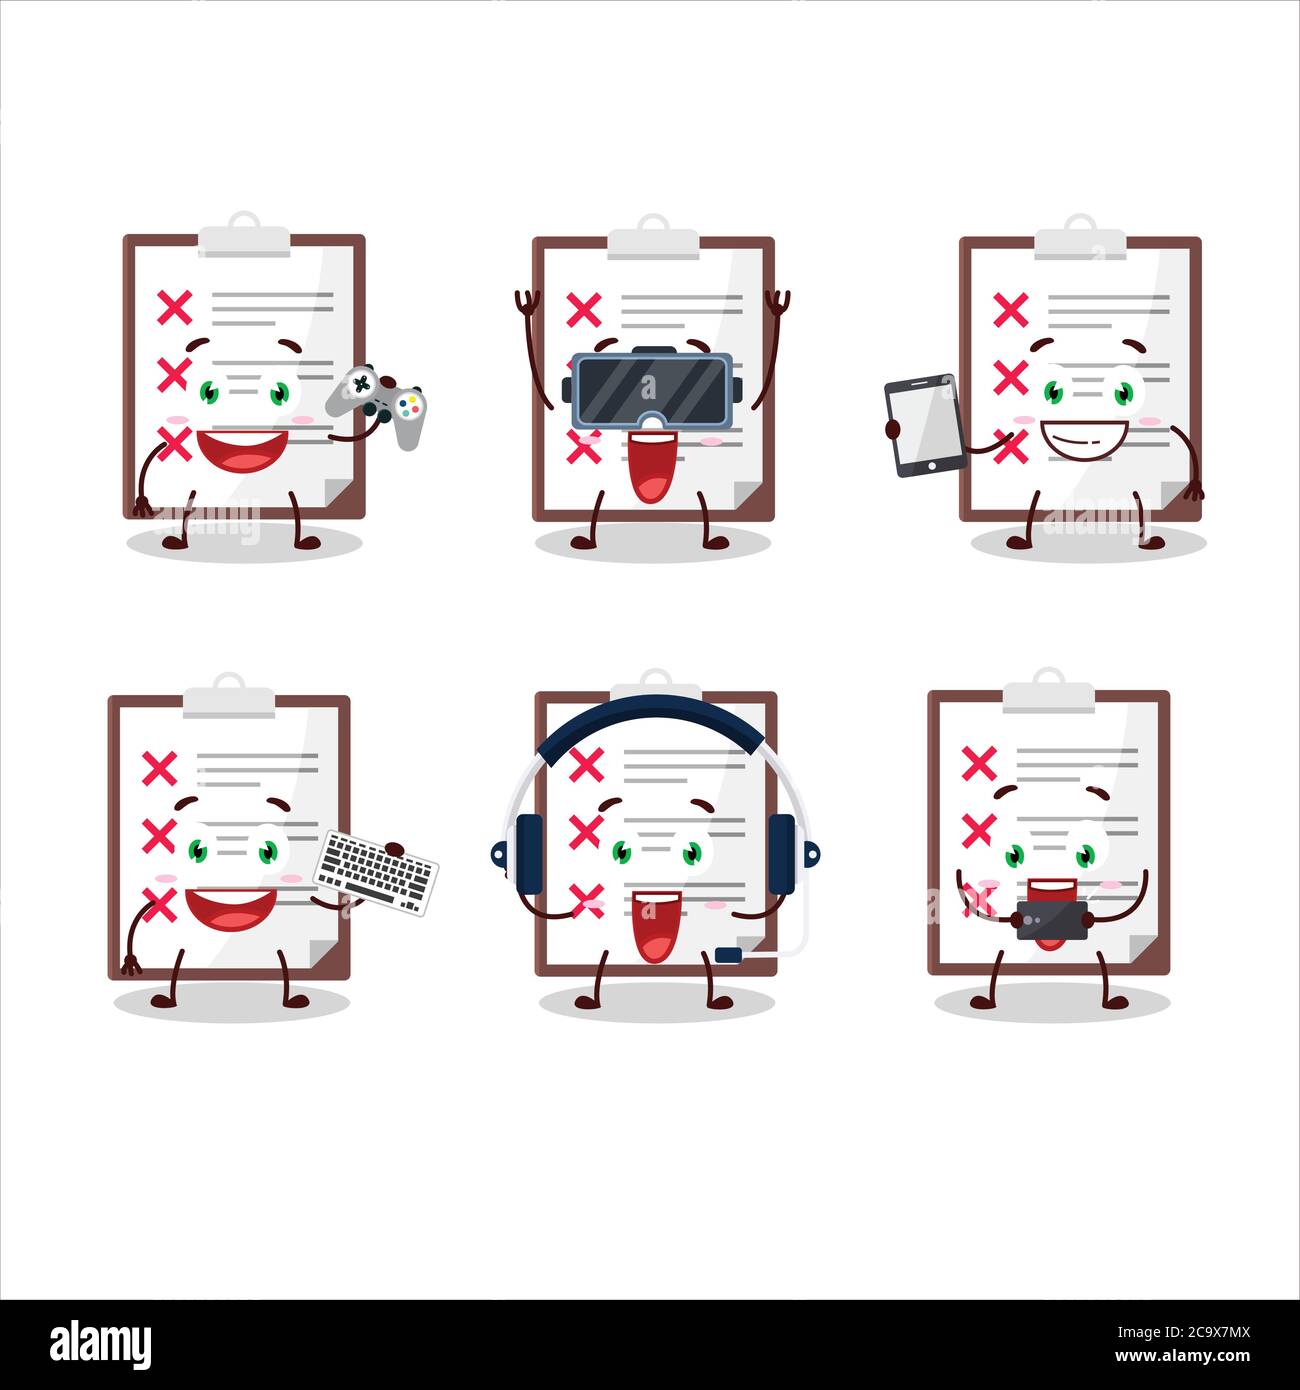 Le presse-papiers avec le personnage de dessin animé de vérification croisée jouent à des jeux avec diverses émoticônes mignons Illustration de Vecteur